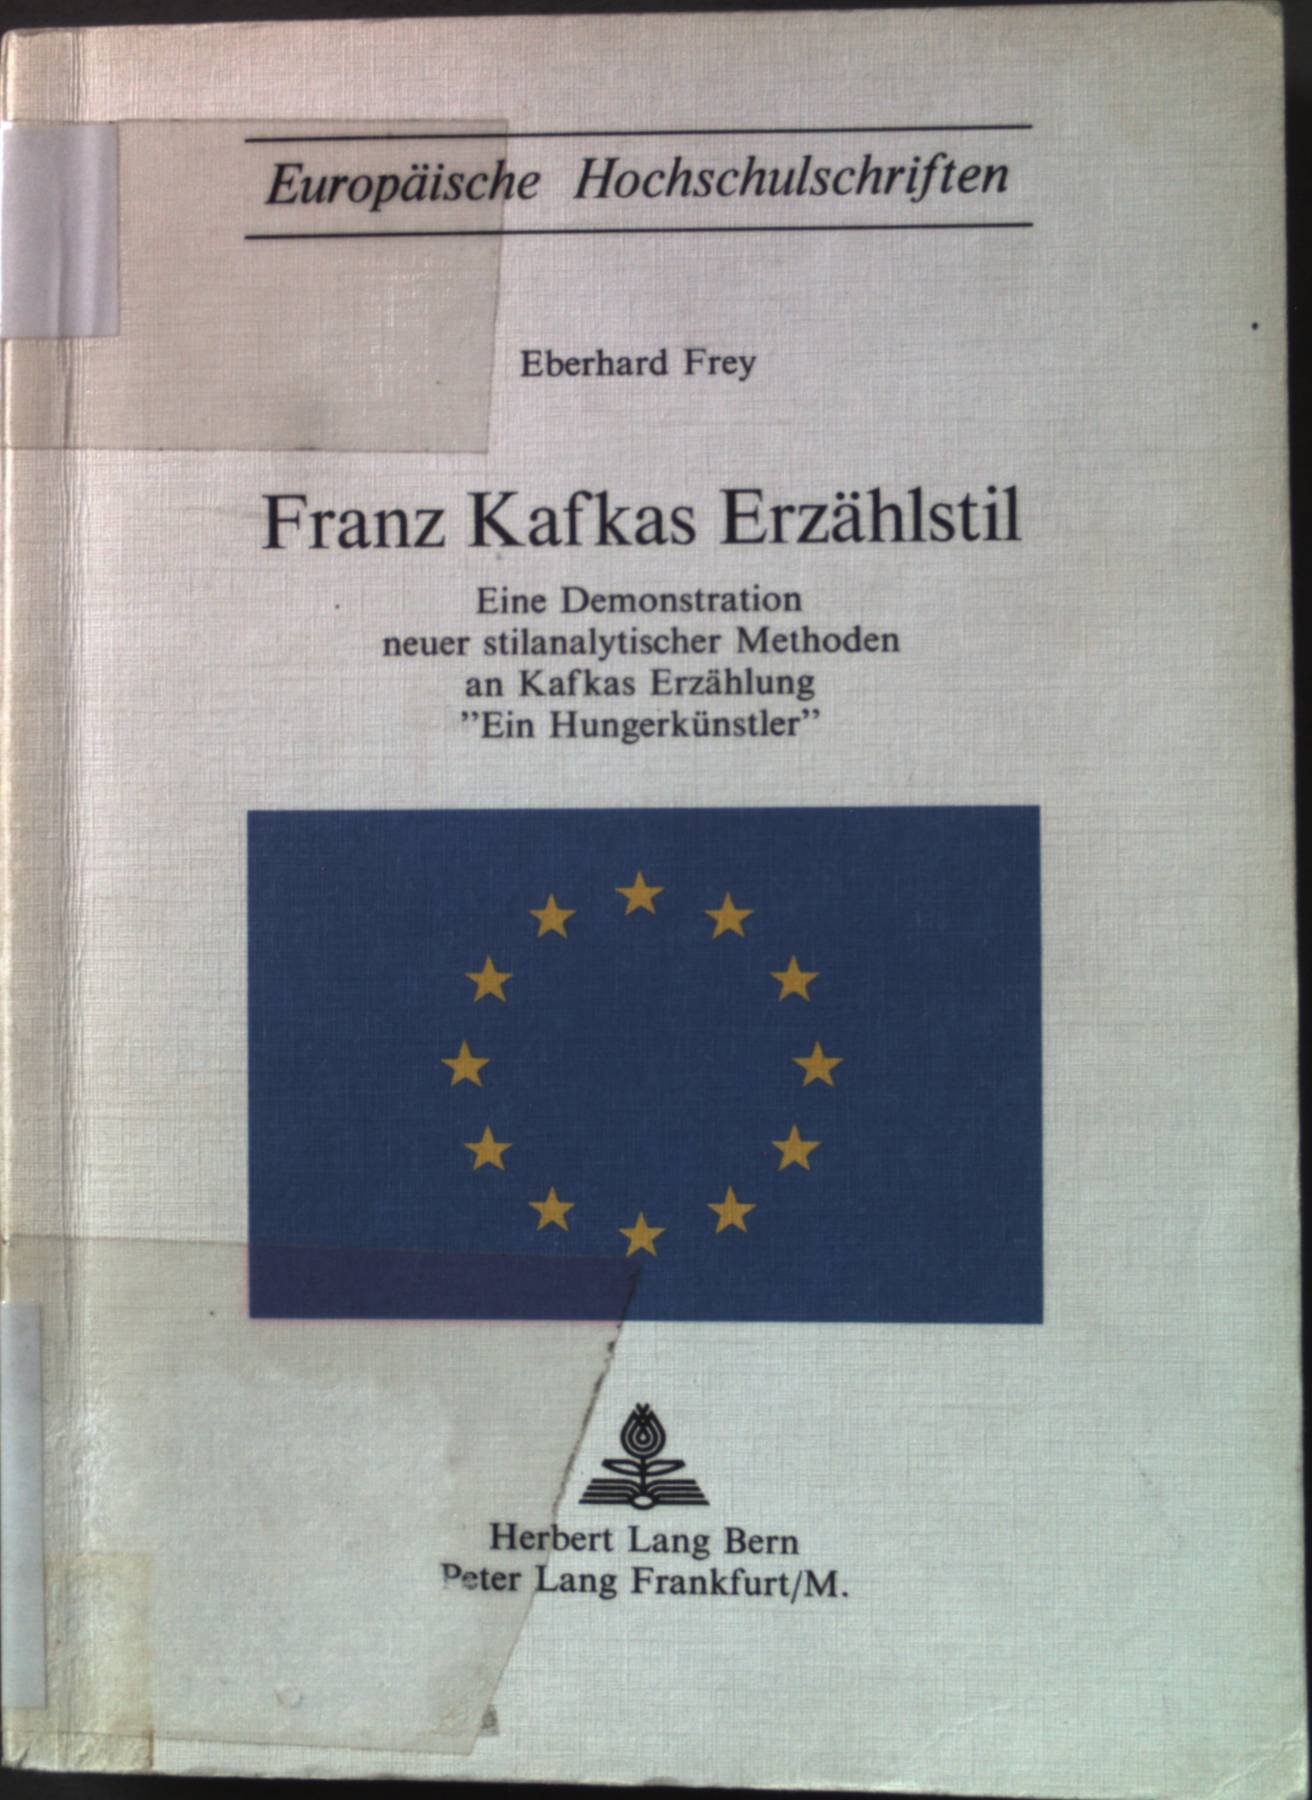 Franz Kafkas Erzählstil: Eine Demonstration neuer stilanalytischen Methoden an Kafkas Erzählung 